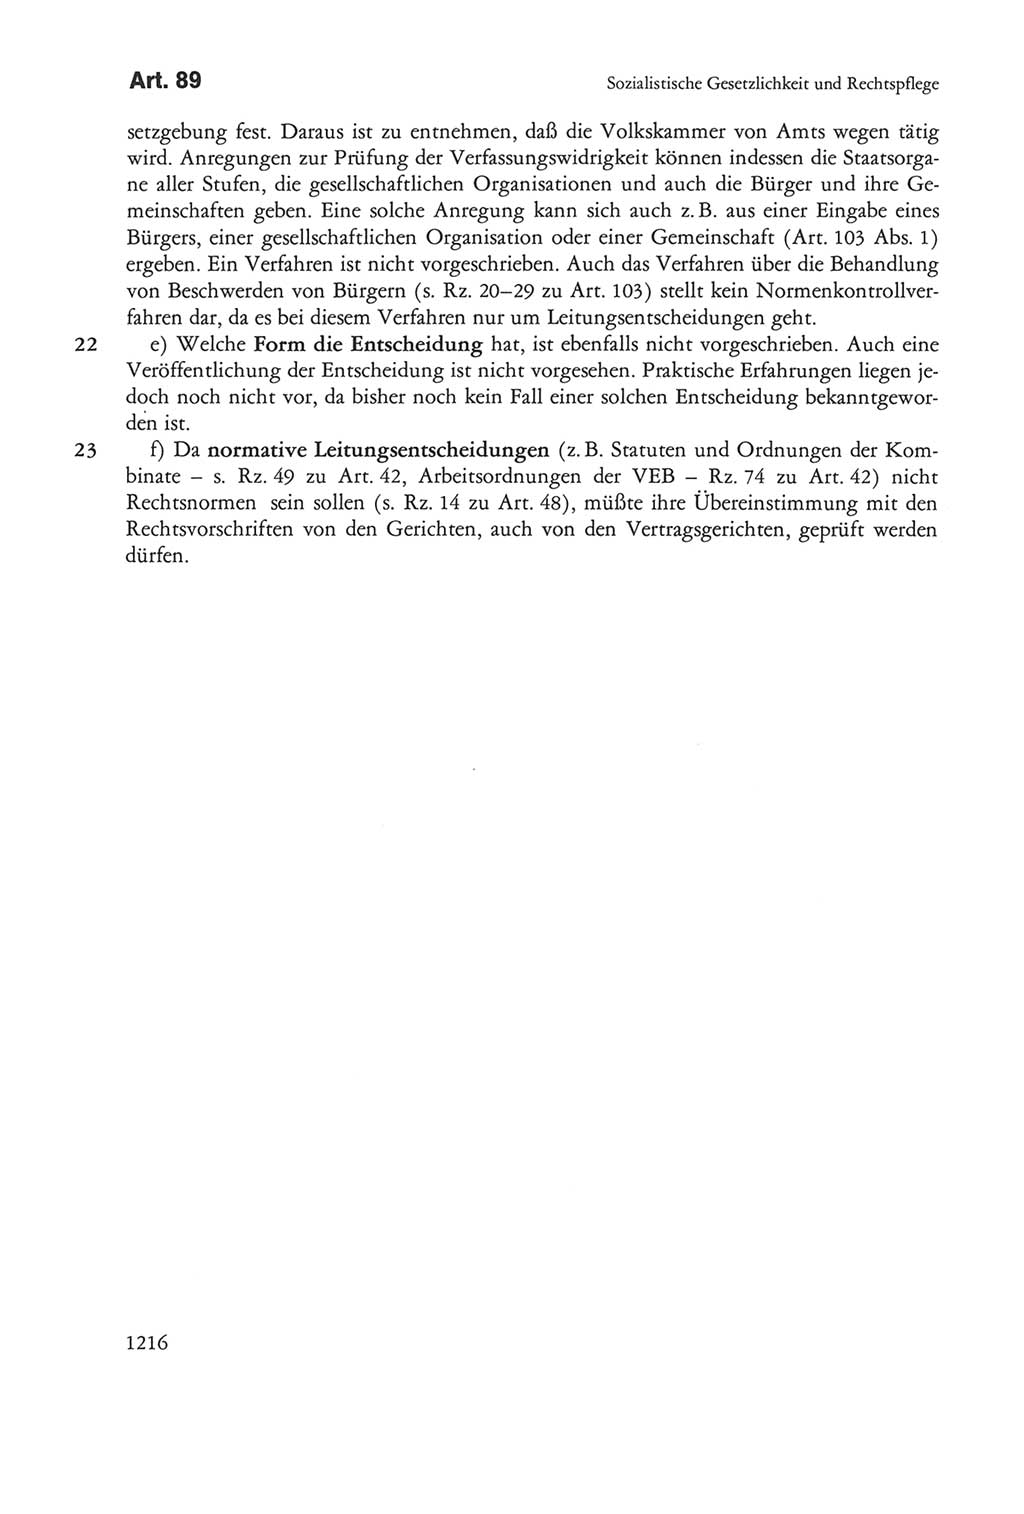 Die sozialistische Verfassung der Deutschen Demokratischen Republik (DDR), Kommentar mit einem Nachtrag 1997, Seite 1216 (Soz. Verf. DDR Komm. Nachtr. 1997, S. 1216)